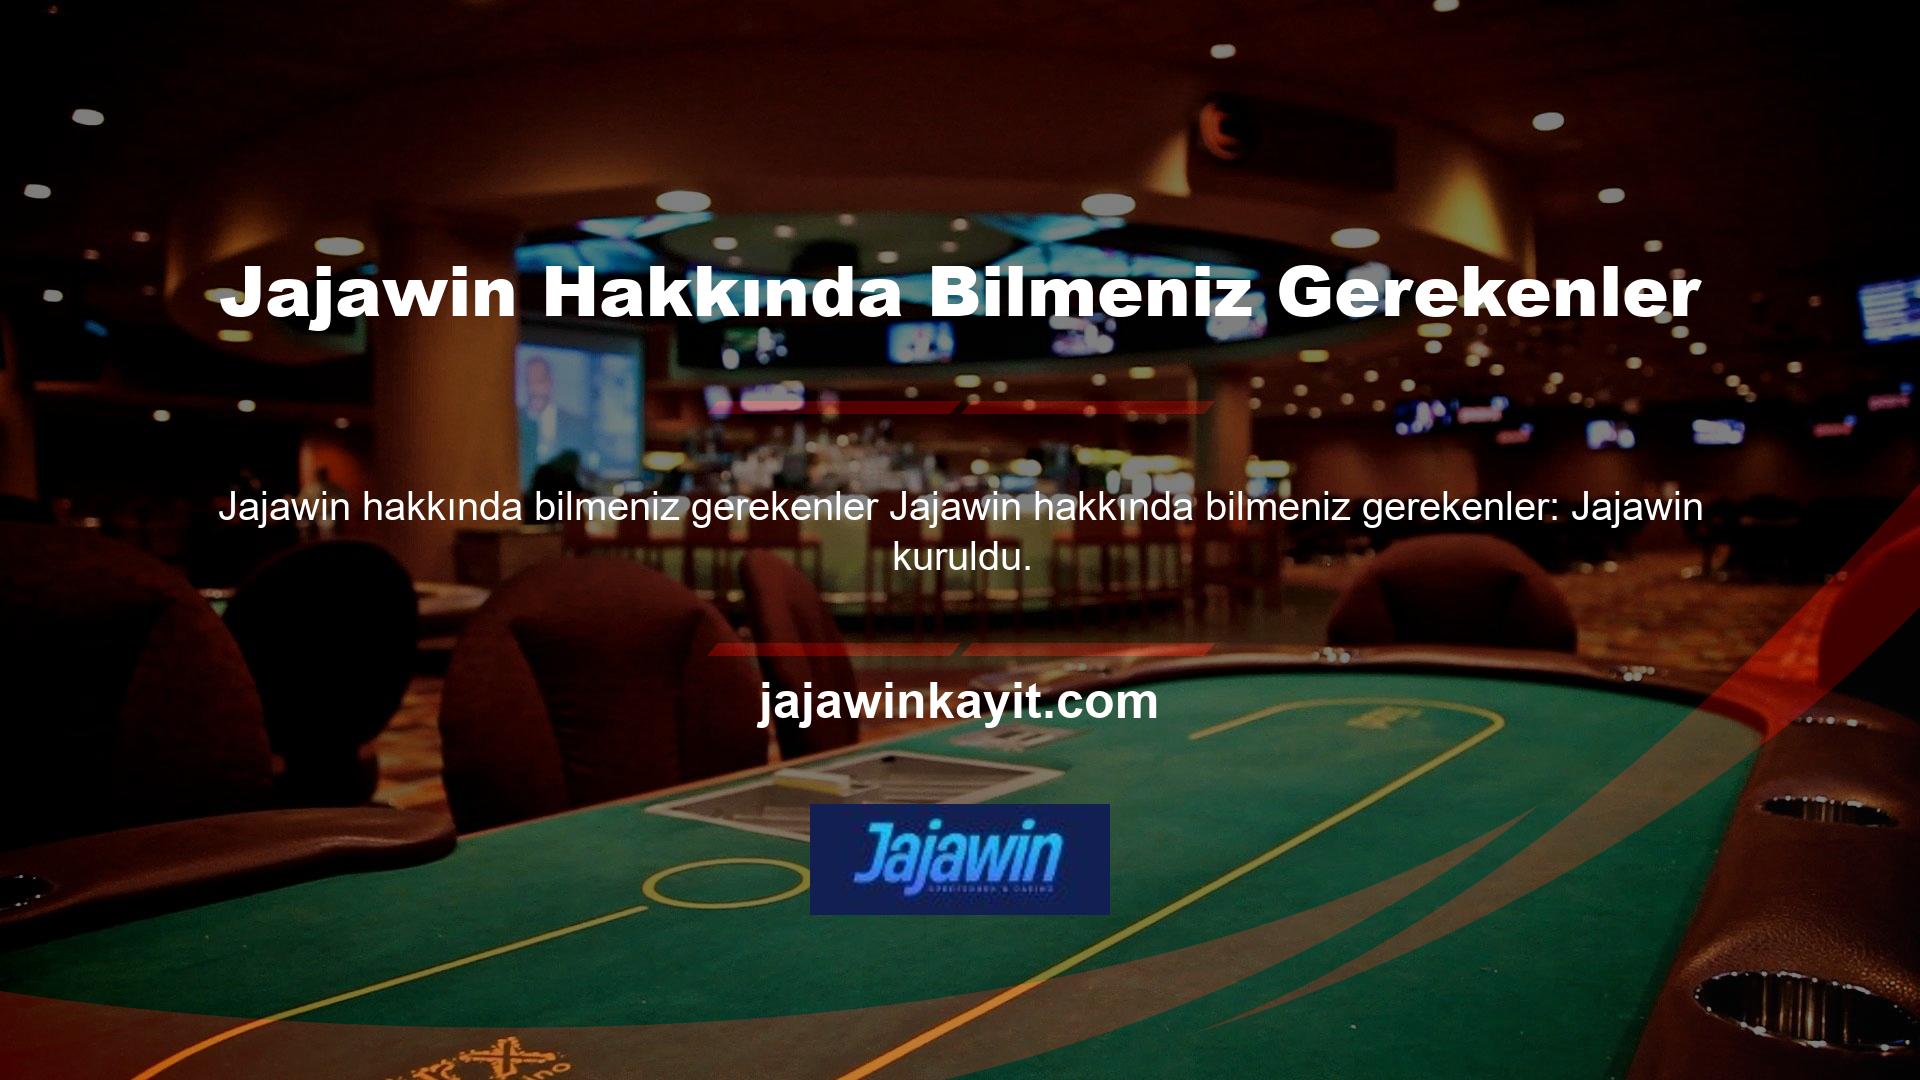 Jajawin canlı bahis sitesi Türkçe ve İngilizce olmak üzere iki dil seçeneği sunmaktadır